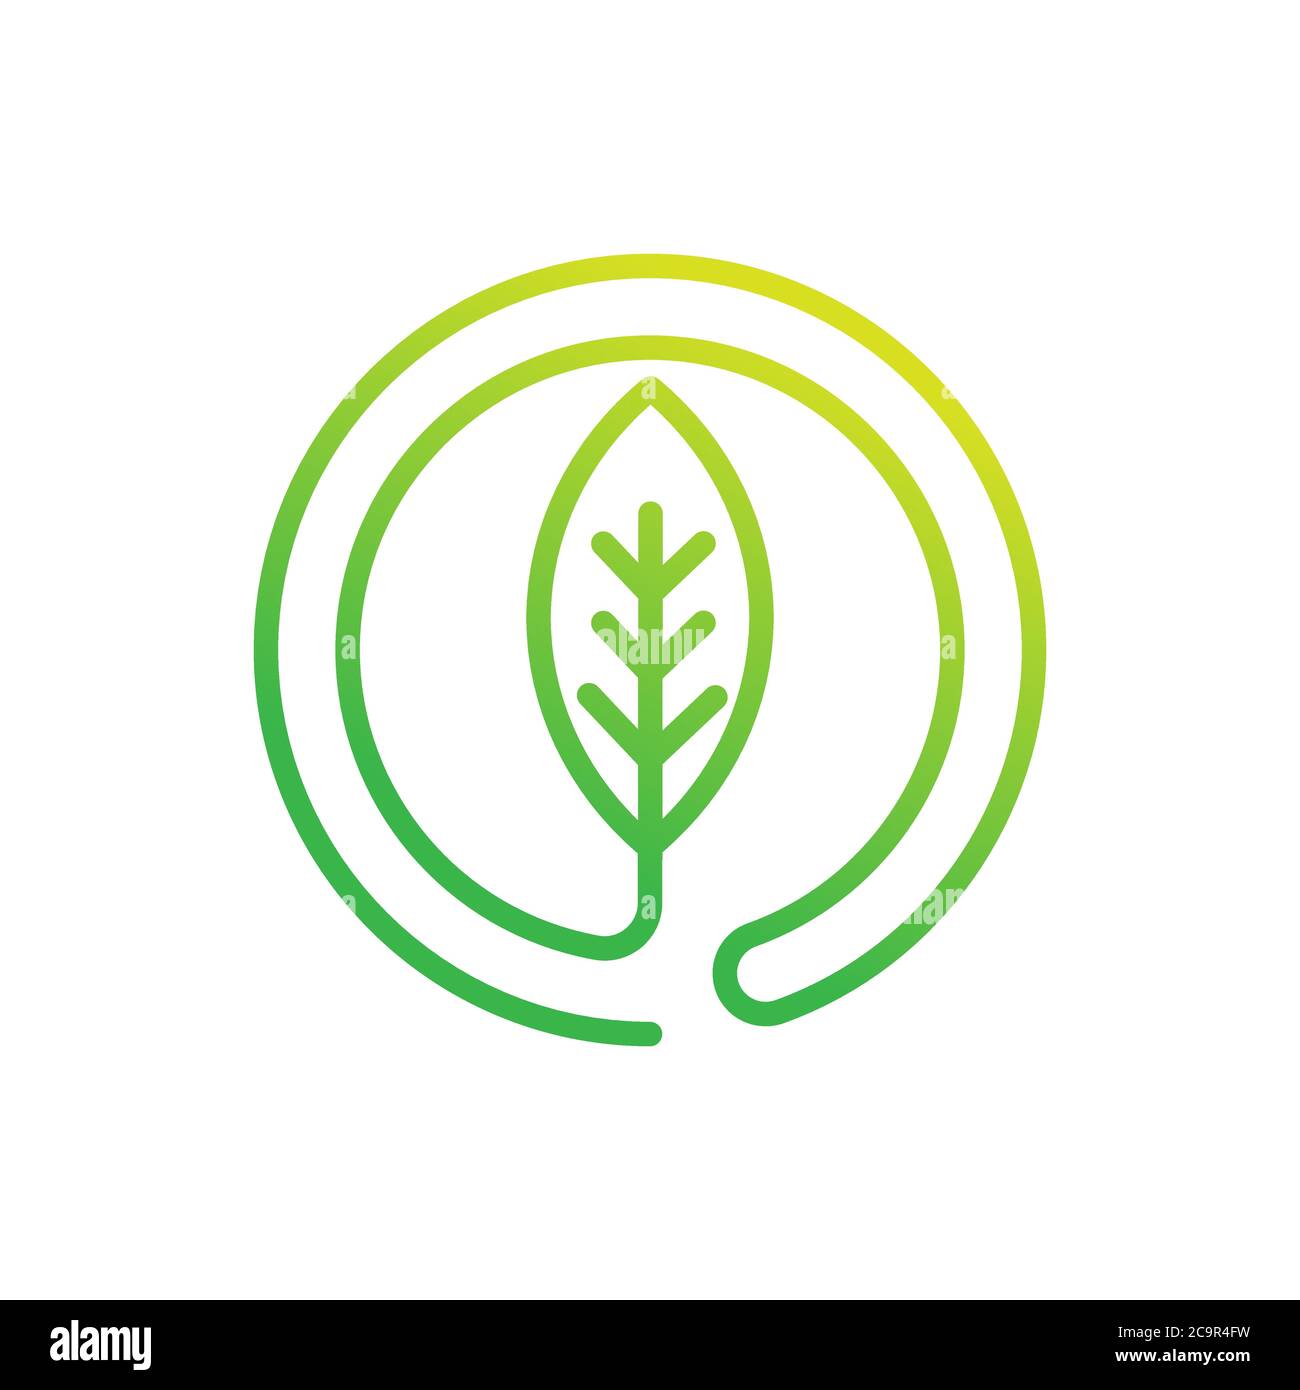 Illustration vectorielle du logo feuille. Résumé vecteur du logo feuille dans un concept de design créatif pour la nature, l'agriculture et les activités agricoles. Logo Tree Leaf, Illustration de Vecteur